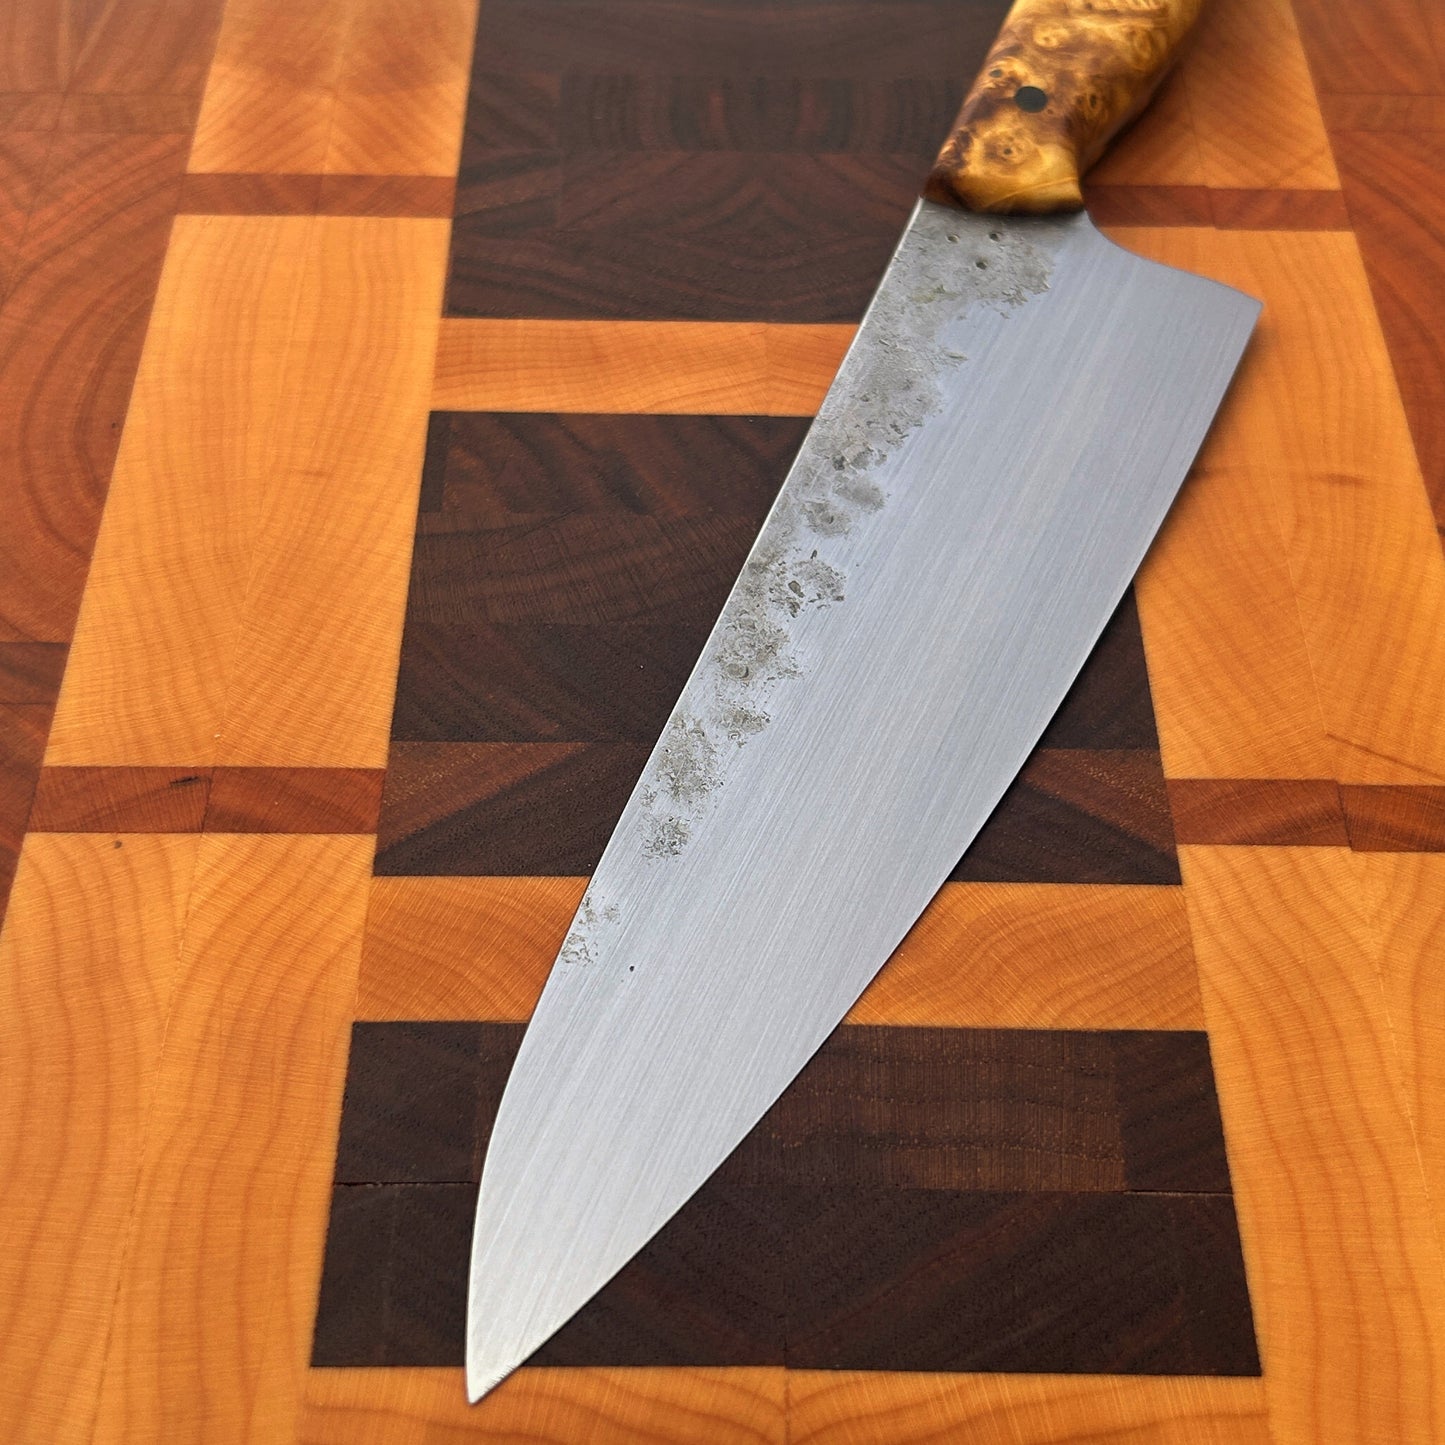 Gyuto Kitchen Knife